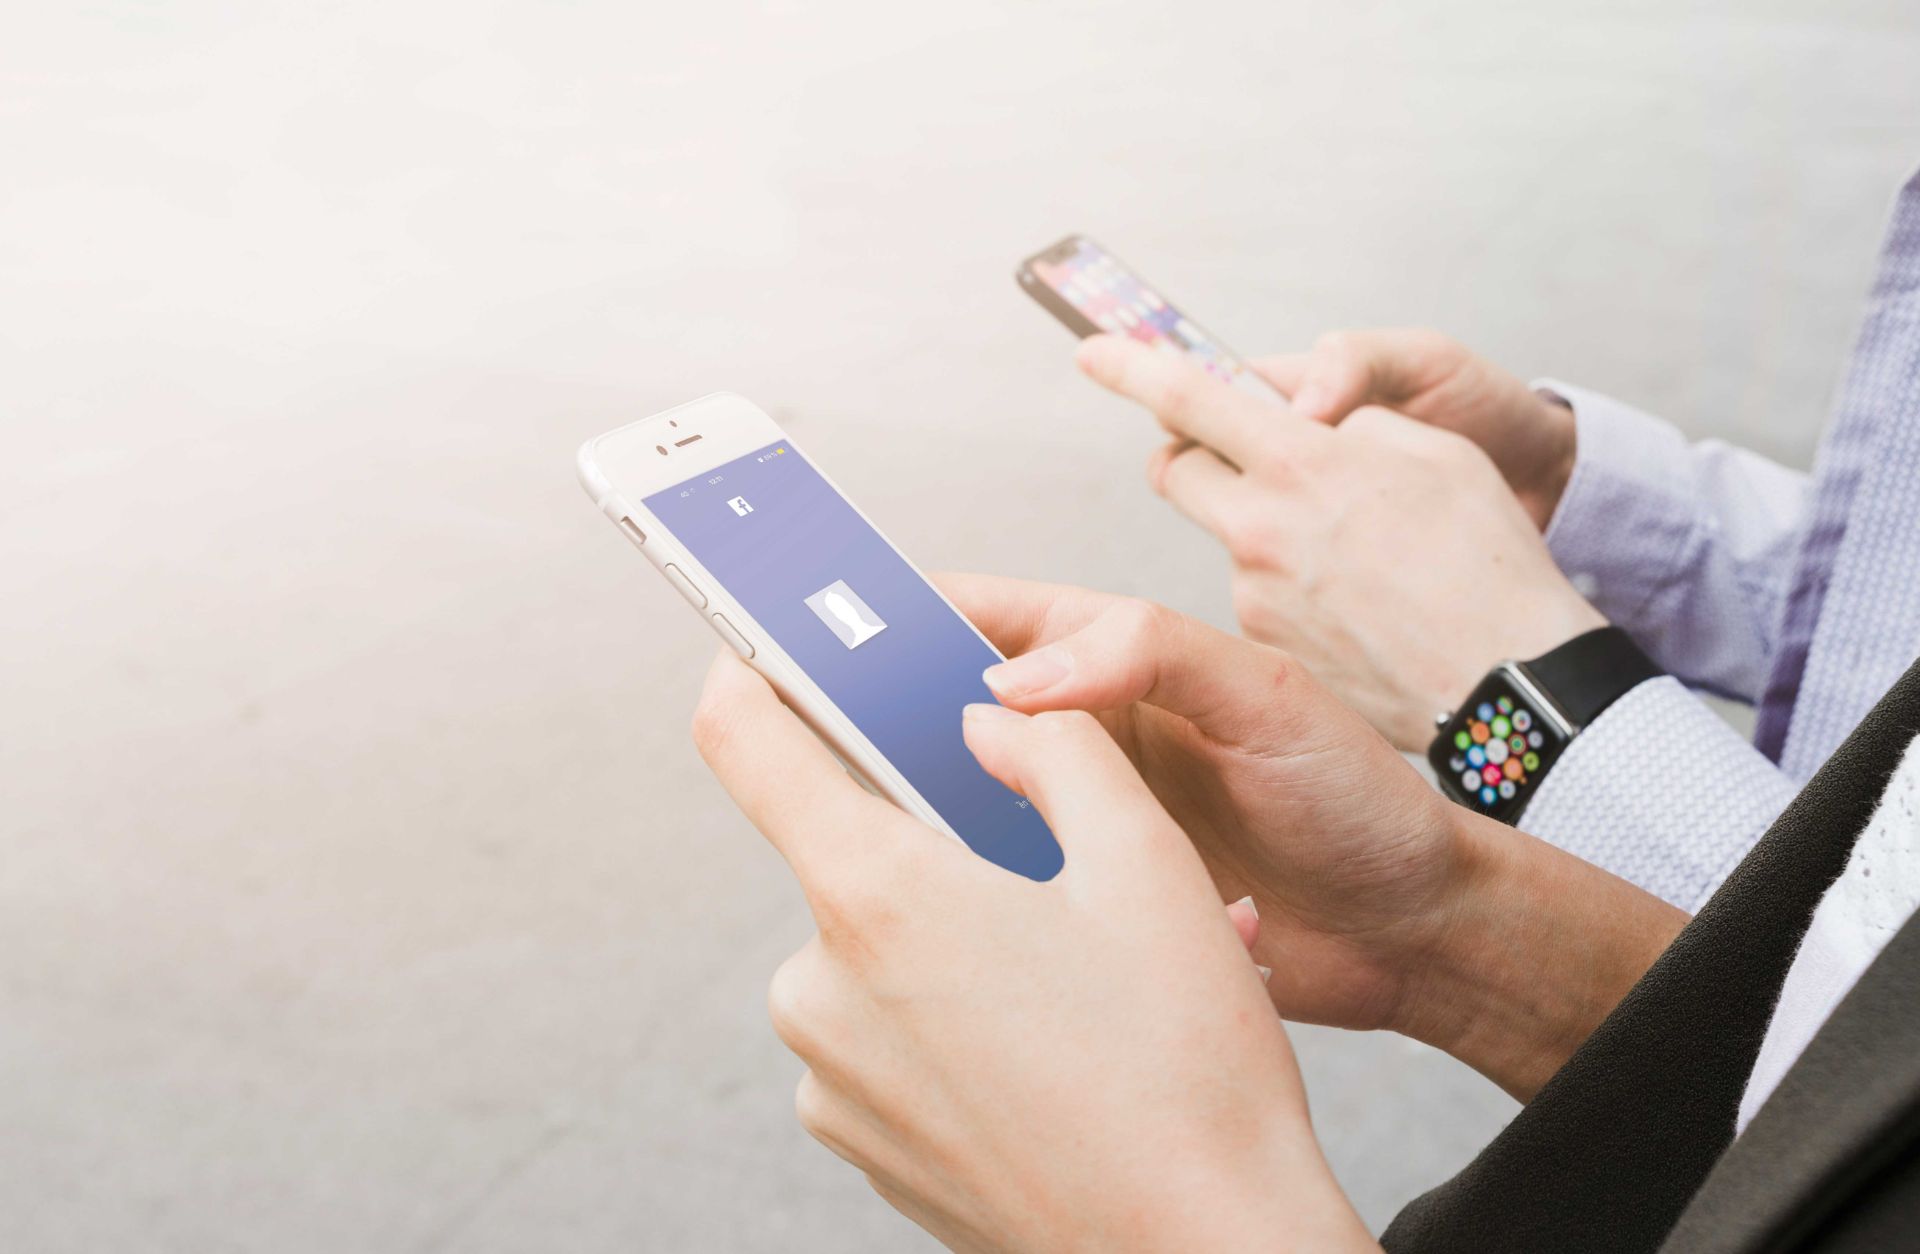 مرجع متخصصين ايران چت كردن اپليكيشن فيسبوك ساعت هوشمند